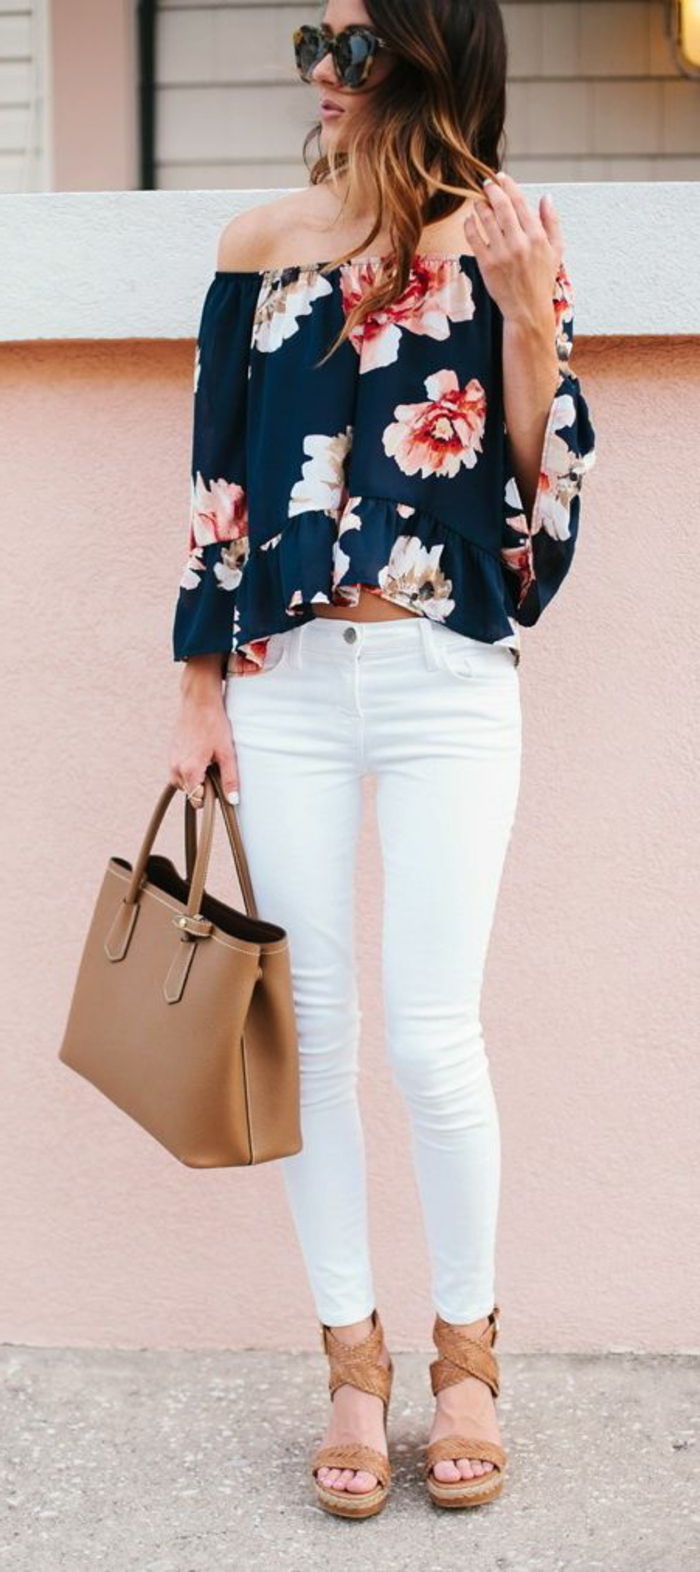 jurk code smart casual vrouw beige tas en sandalen krullend haar kleurrijke blouse bloemen